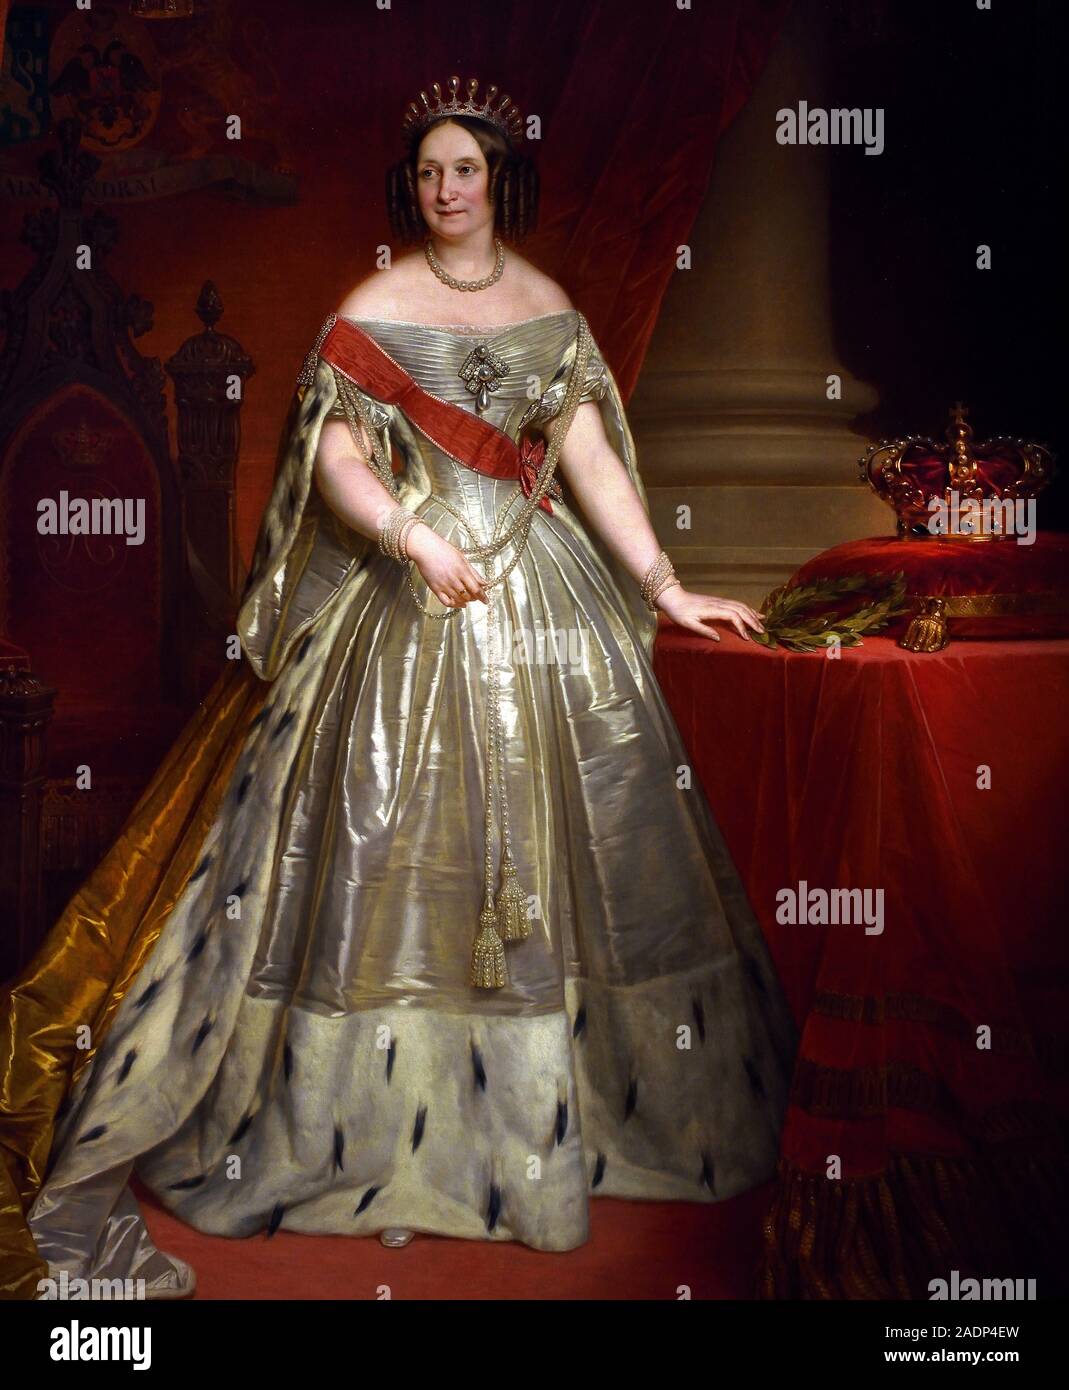 Gran Duchessa e regina Anna Pàvlovna 1849-1850 da Nicaise de Keyser (1813- 1887) pittore belga ( consorte del re Guglielmo II dei Paesi Bassi ) , i gioielli di russo corte imperiale, XVIII-XIX secolo, la Russia. Foto Stock